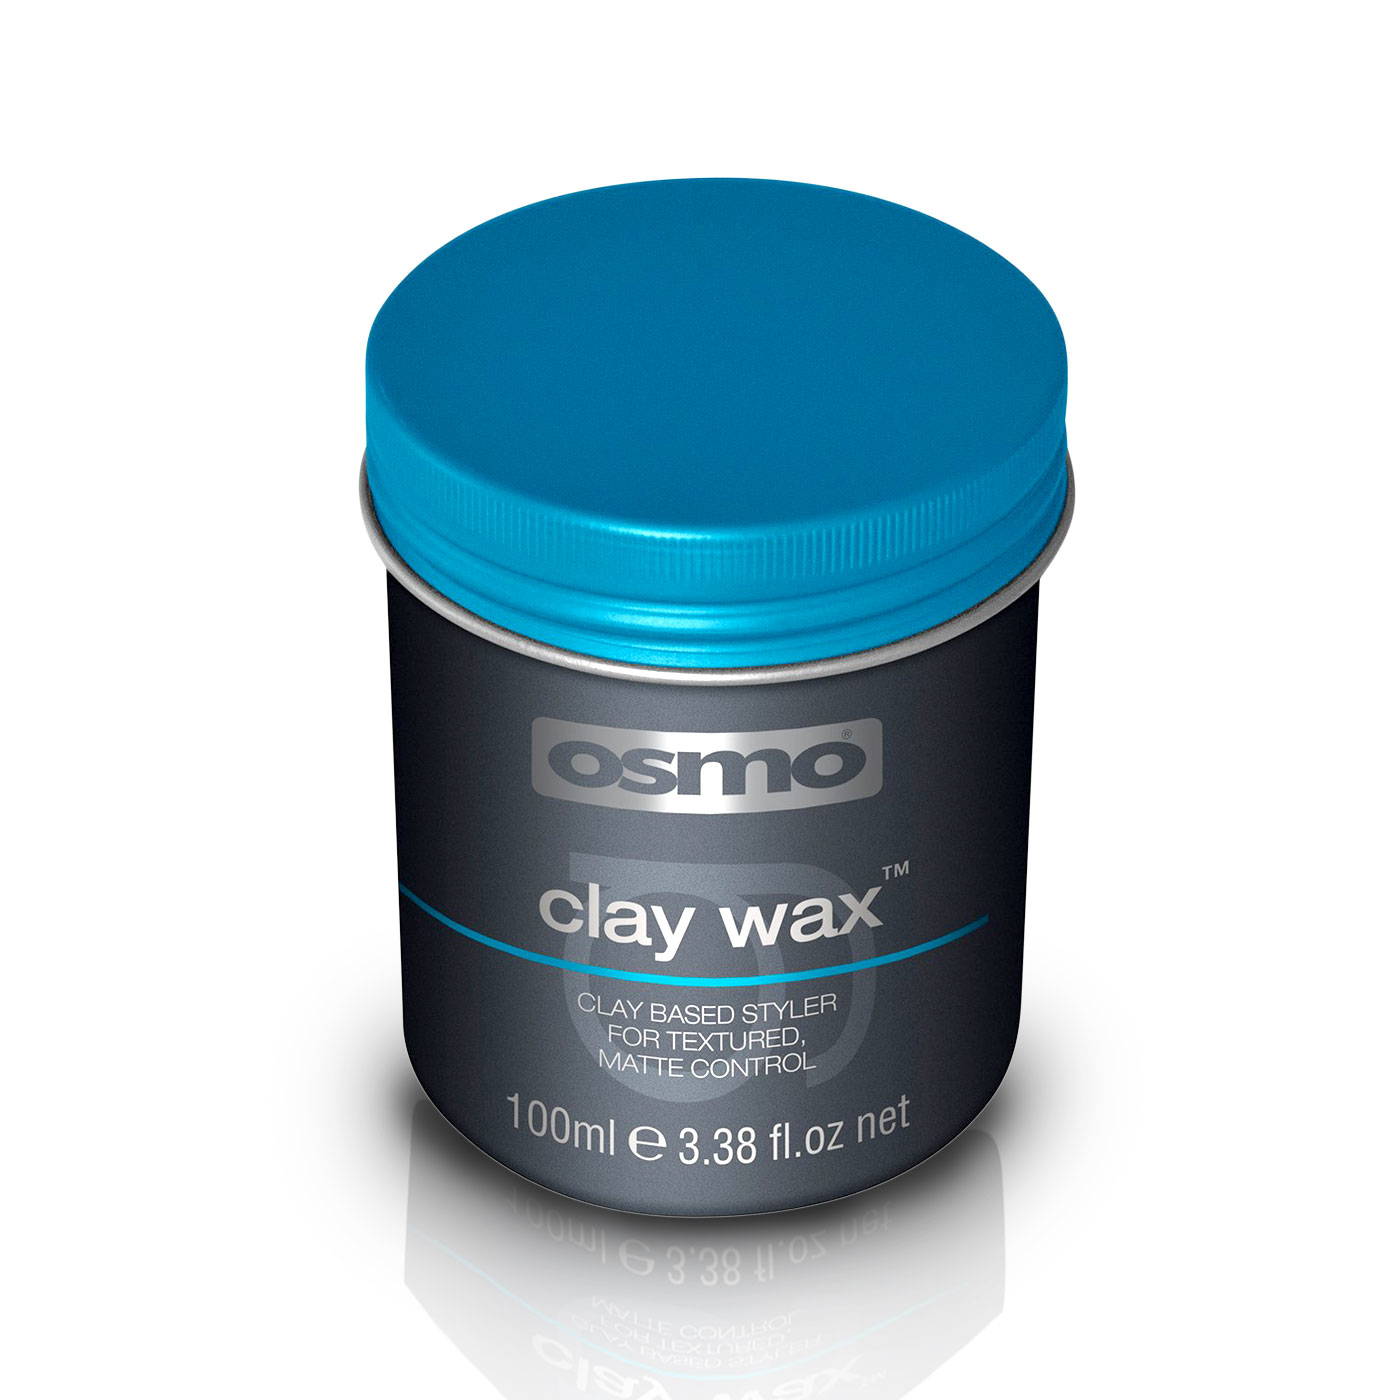 Osmo clay wax™ 100ml - 9064005 ARLOS MEN'S CARE LINE